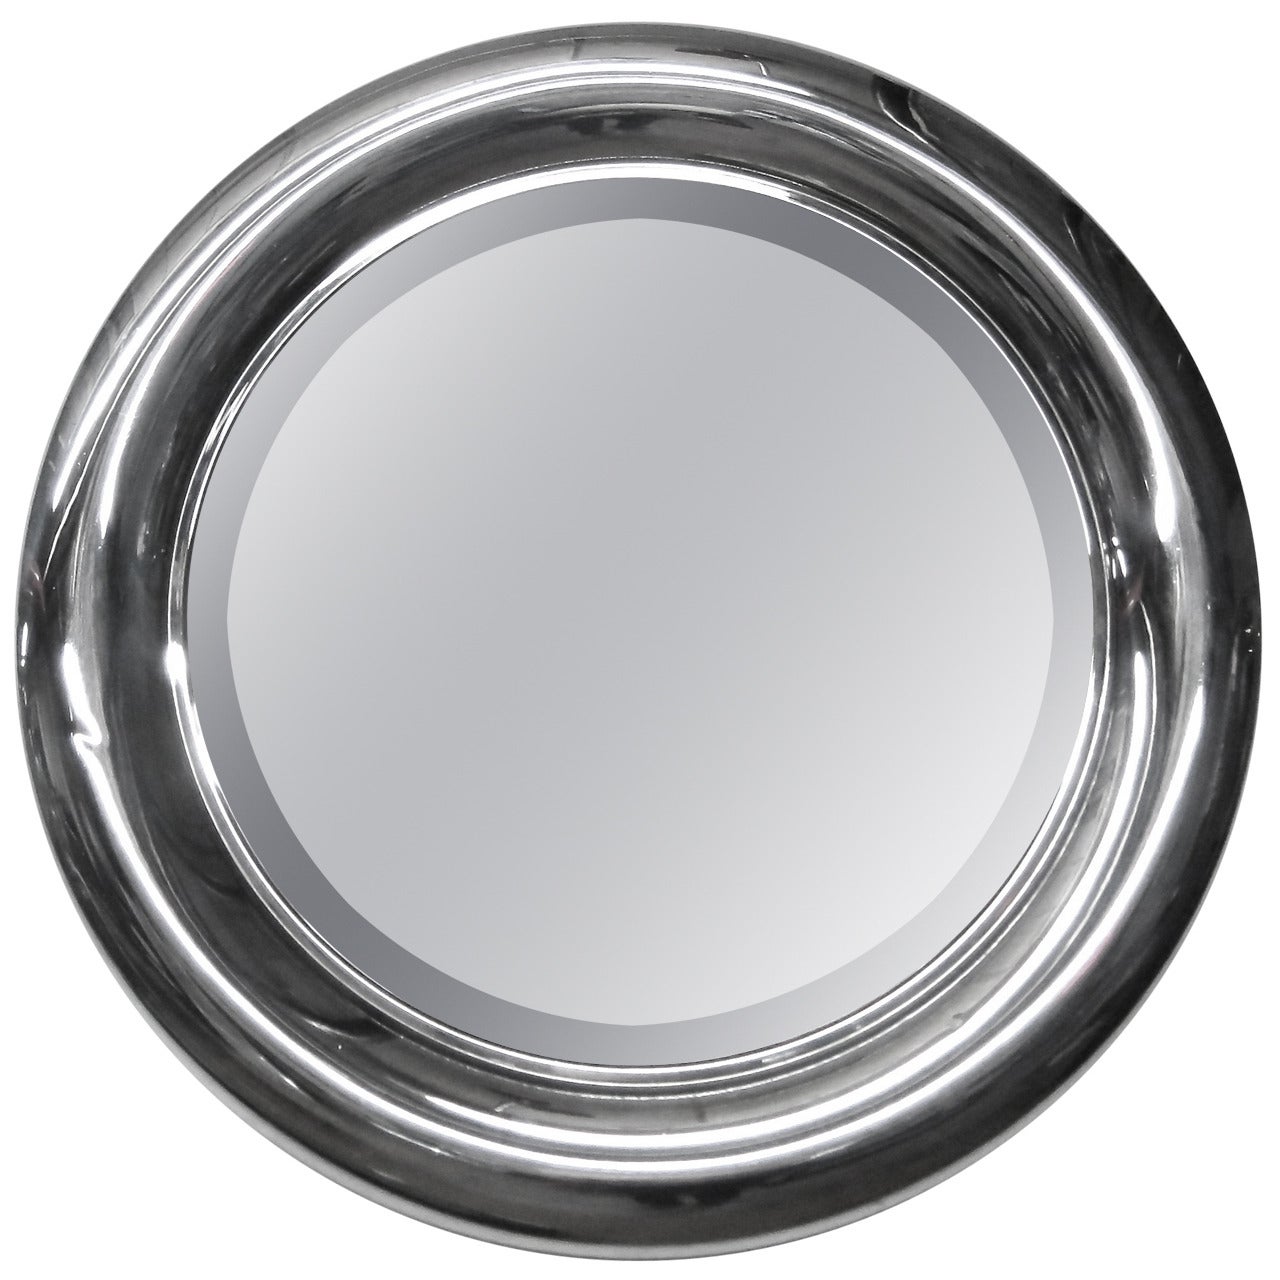 Convex Mirror Designed for Studio Reggiani, Made in Italy, circa 1970